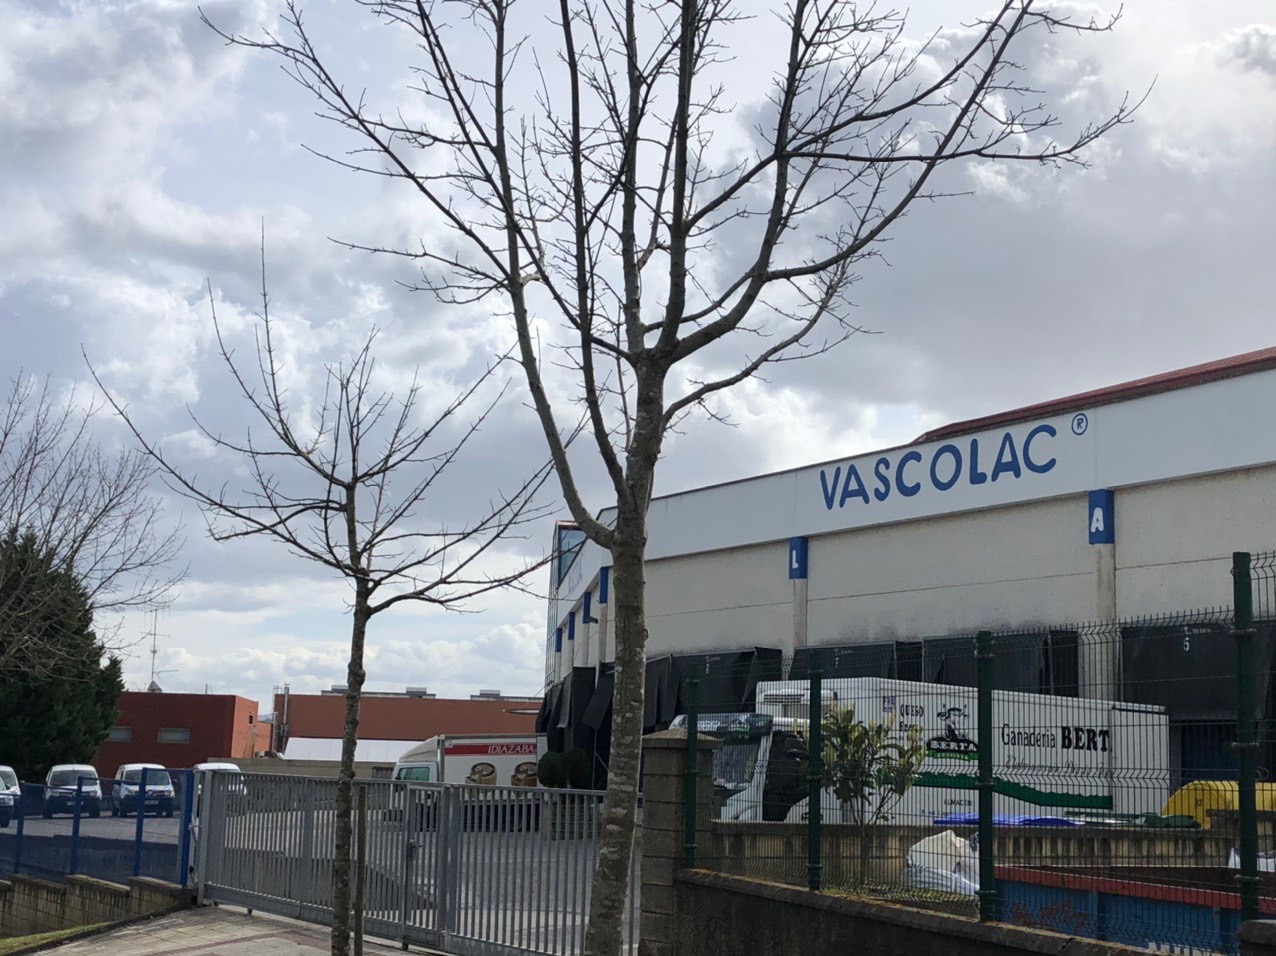 Vascolac integra la quesería Berta para afianzar su futuro y agrupar pequeñas empresas del sector